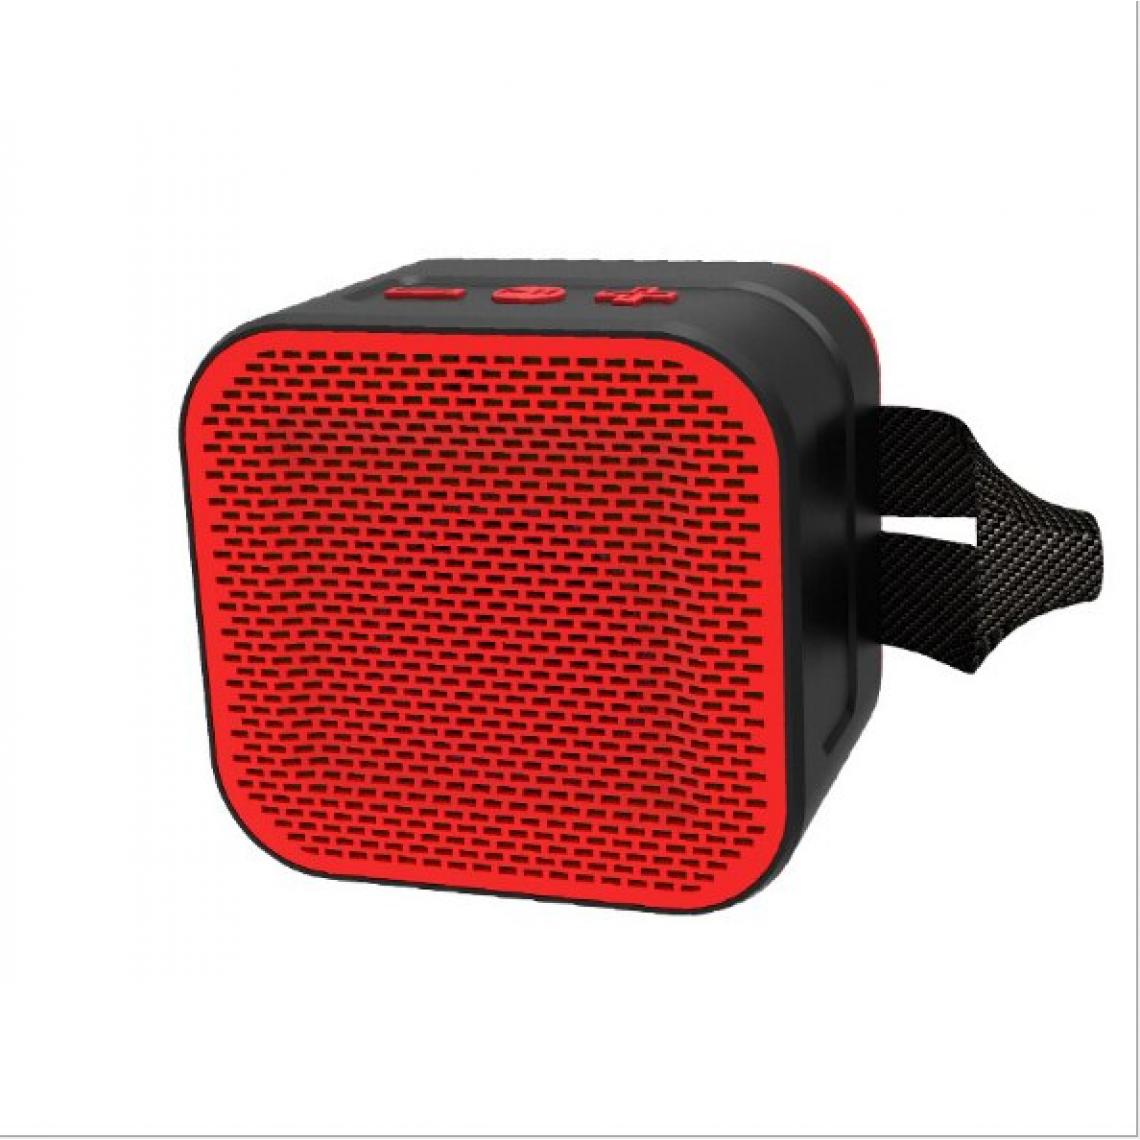 Universal - Haut-parleur Bluetooth V4.2 sans fil étanche extérieur portable portable bande sonore à ultrasons portable carte TF radio FM assistée MP3 lecteur de musique haut-parleur portable (rouge) - Hauts-parleurs